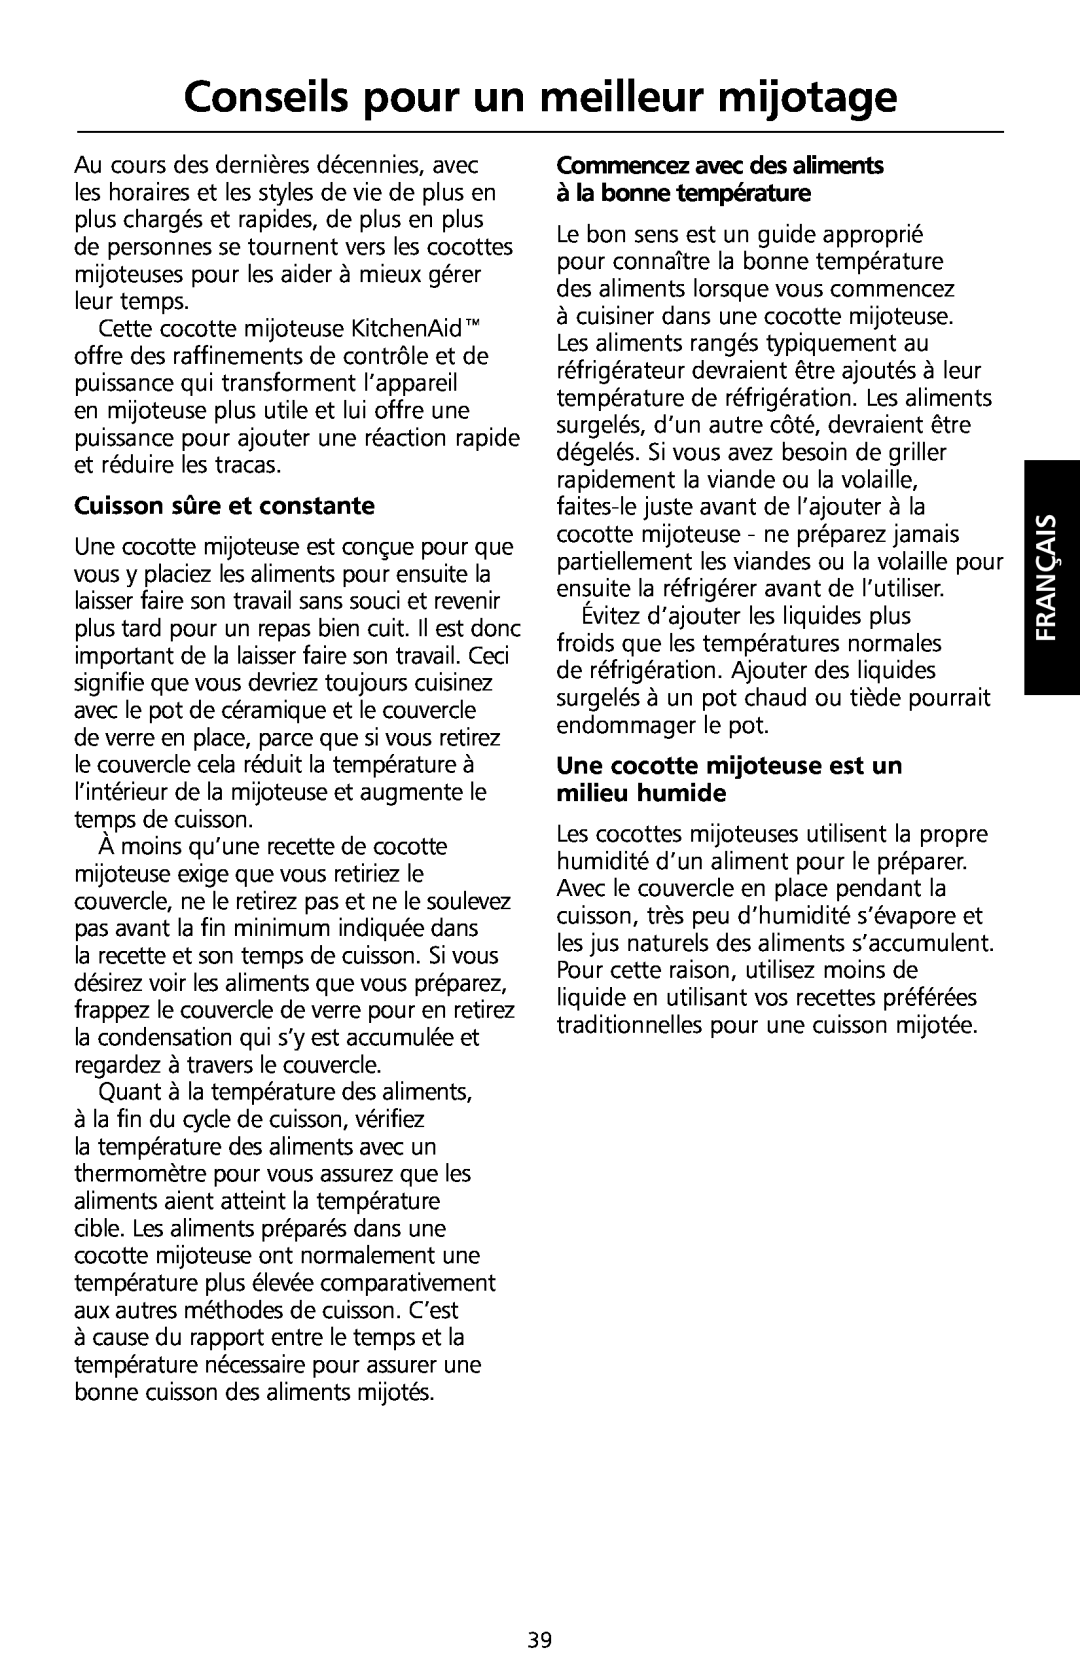 KitchenAid KSC700 manual Conseils pour un meilleur mijotage, Cuisson sûre et constante, Français 